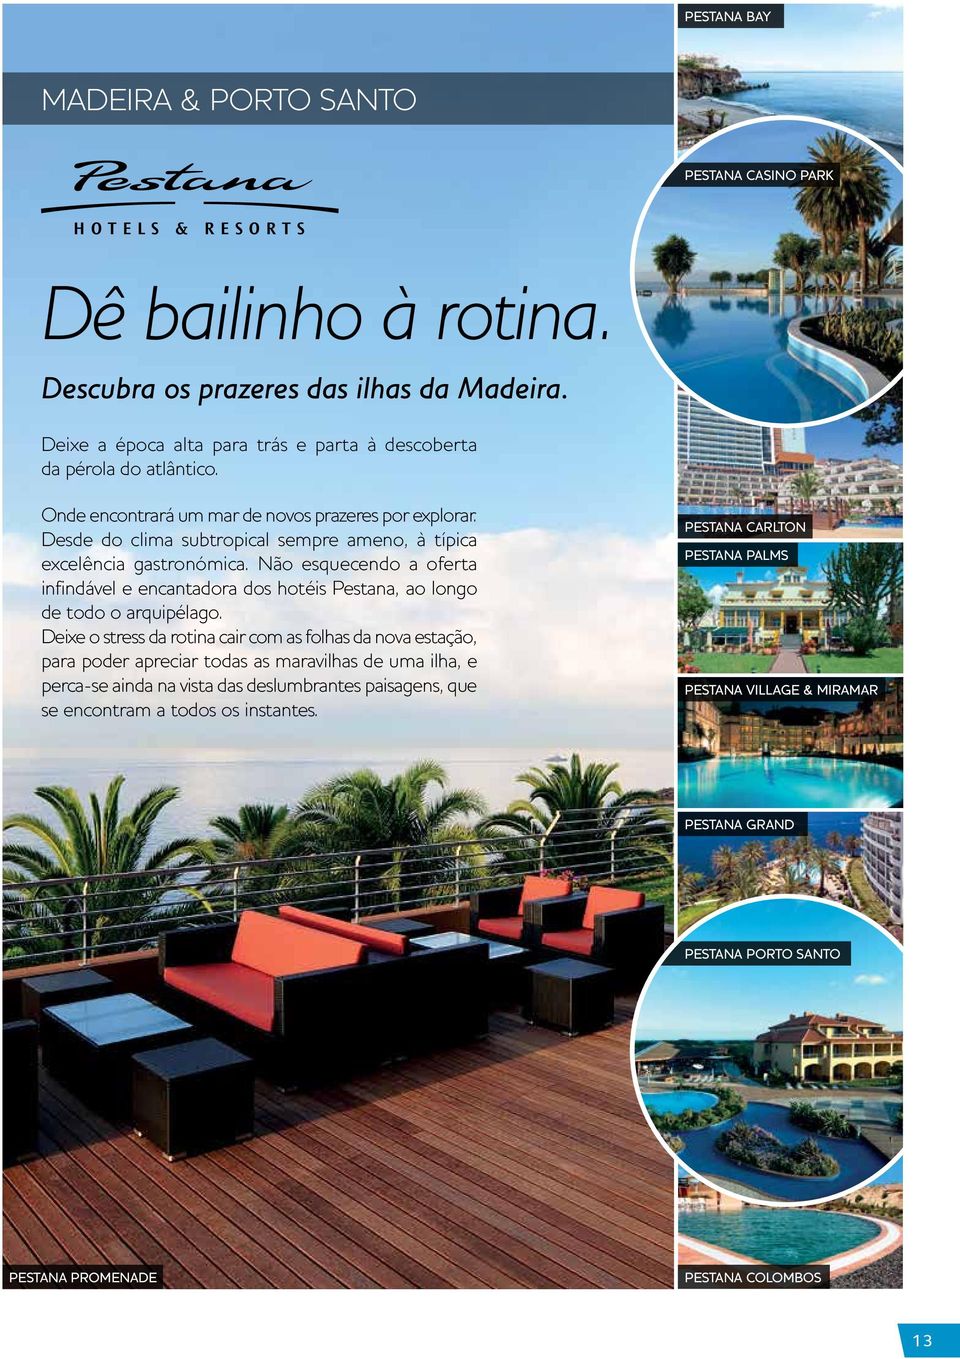 Não esquecendo a oferta infindável e encantadora dos hotéis Pestana, ao longo de todo o arquipélago.